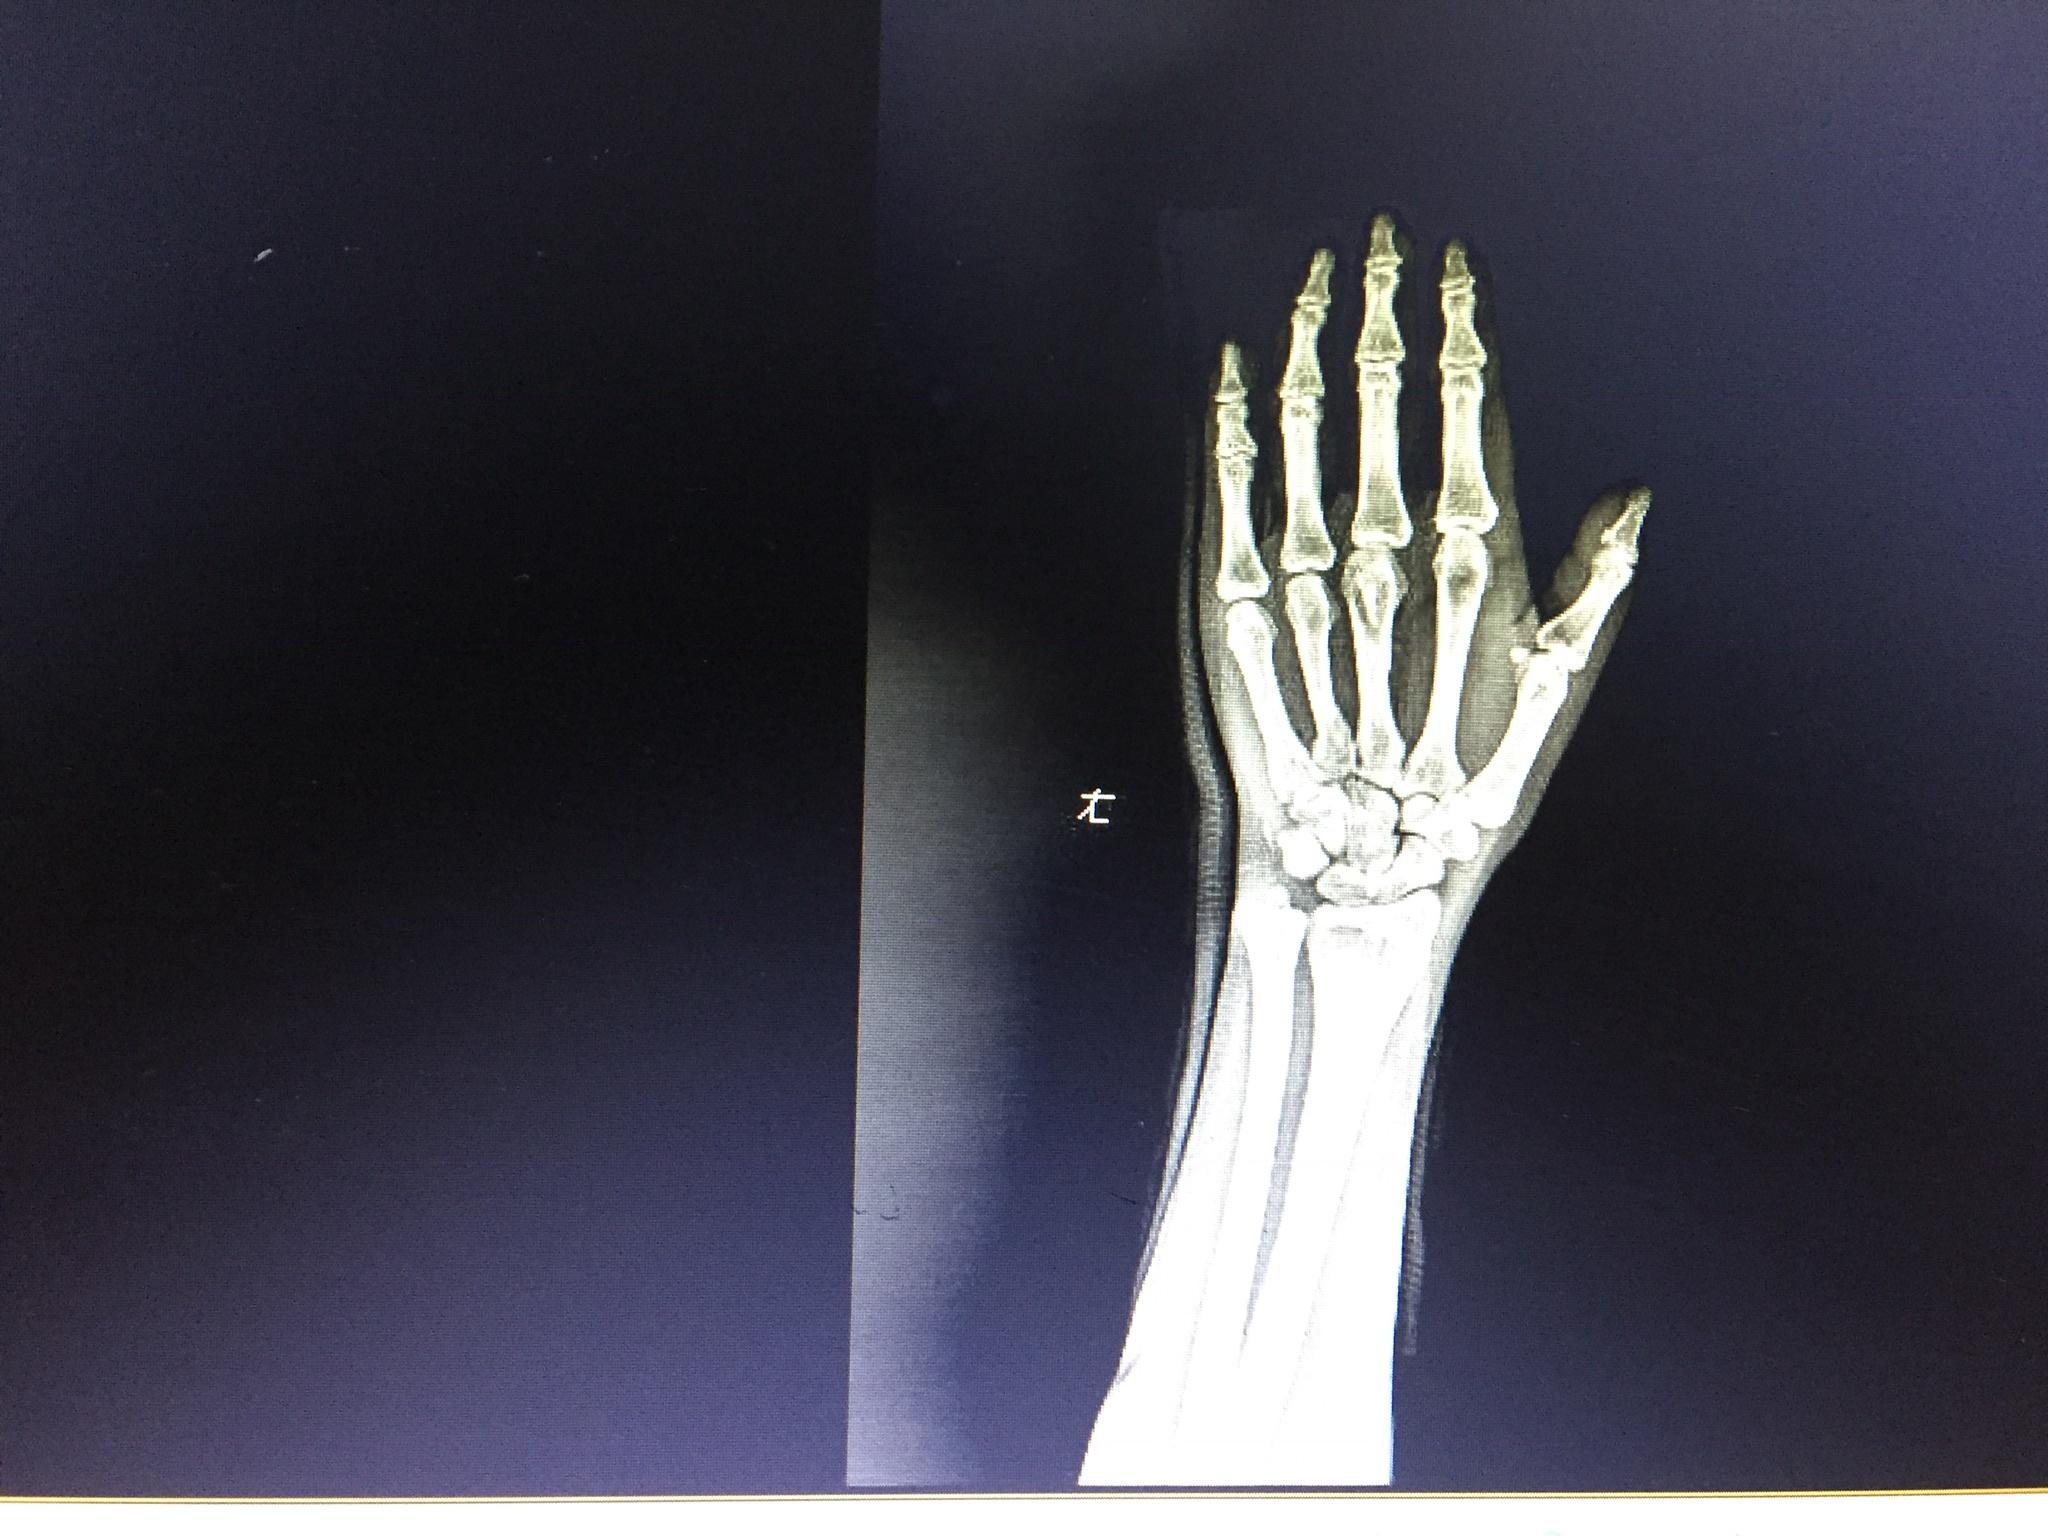 右手第四掌骨斜行性骨折，拍X片图（图片在百度相册）。寻求好的治疗方案。明天用，较急 急_百度知道